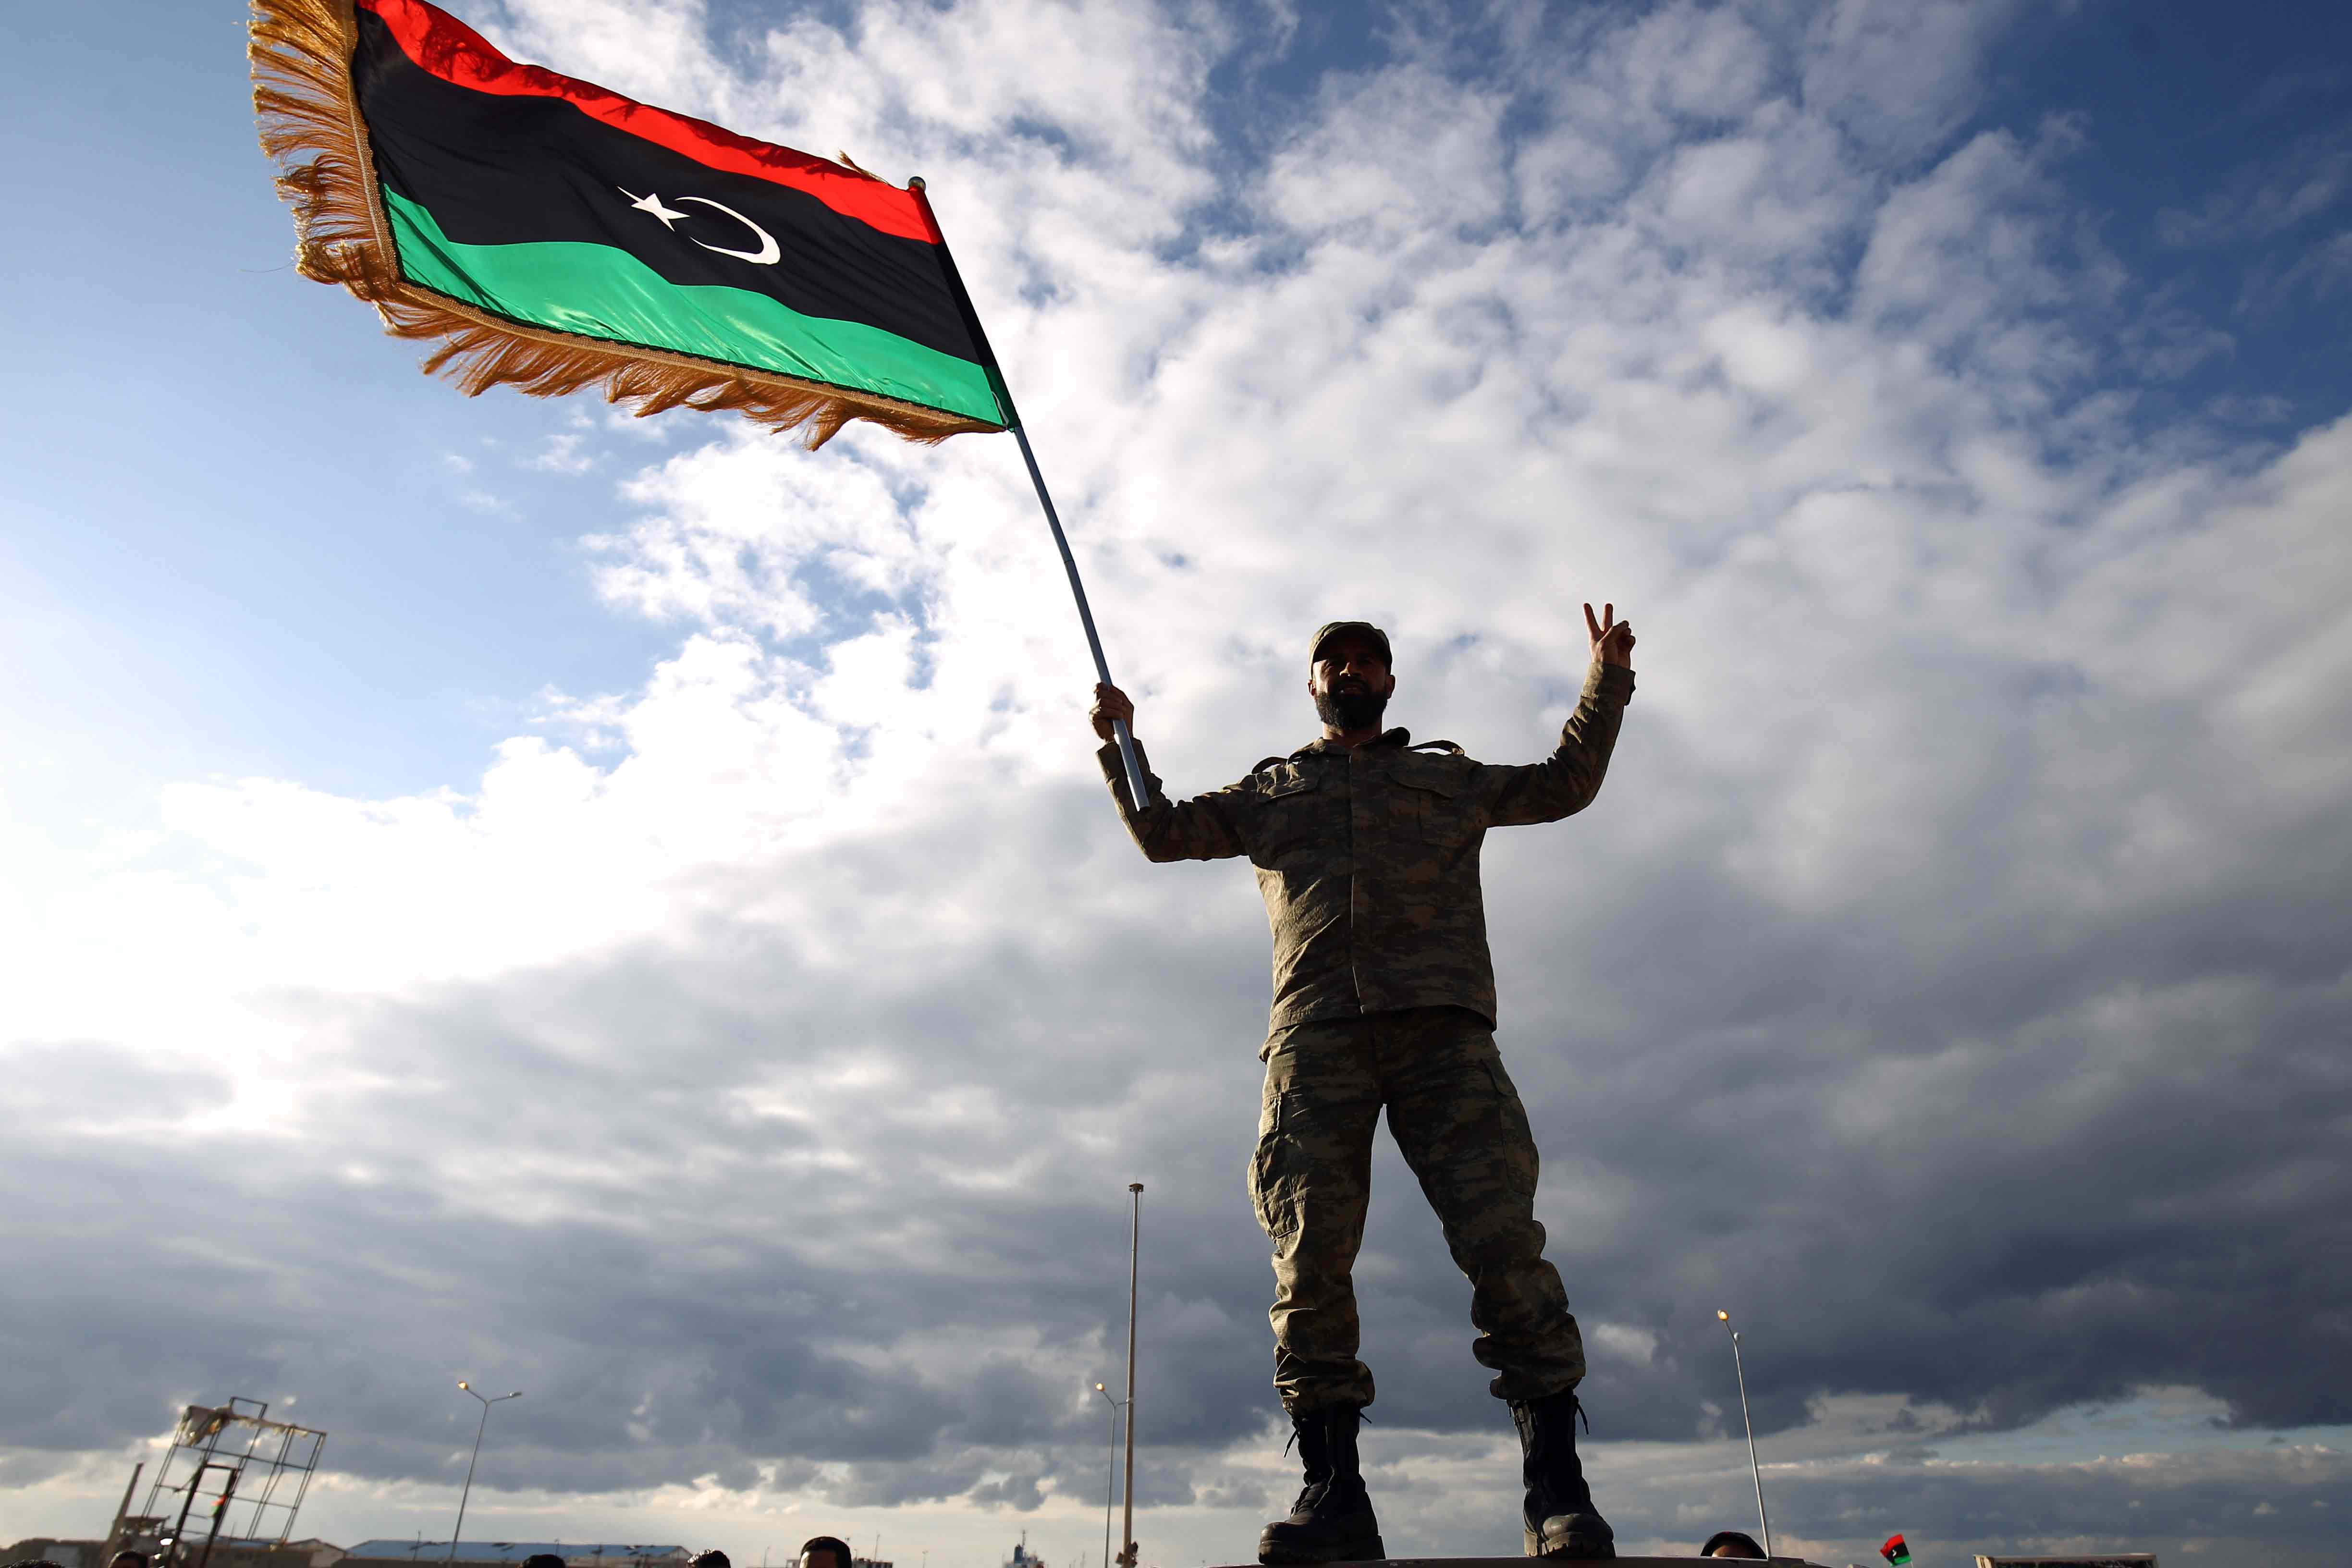 سكان بنغازي أصبحوا يتطلعون للعسكريين لتحقيق إنجازات